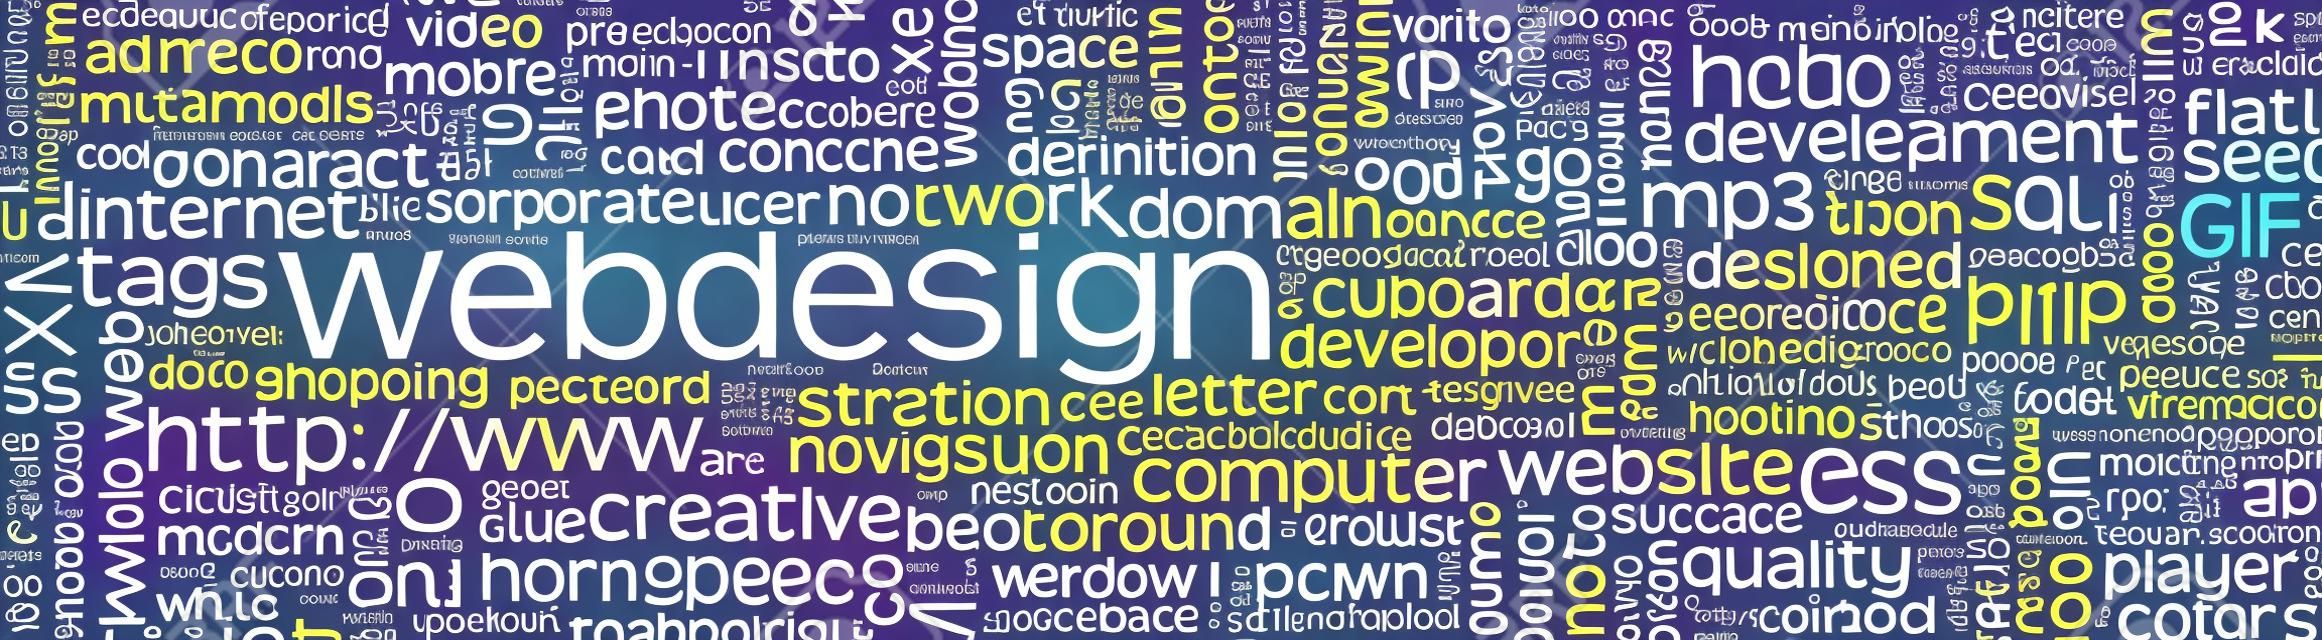 Webdesign Keyword Tag Cloud Panorama mit vielen spezifischen Web Design Words - Wort-Wolke - Vector Hintergrund Banner - SEO, HTML, PHP, CSS, JPG, SQL